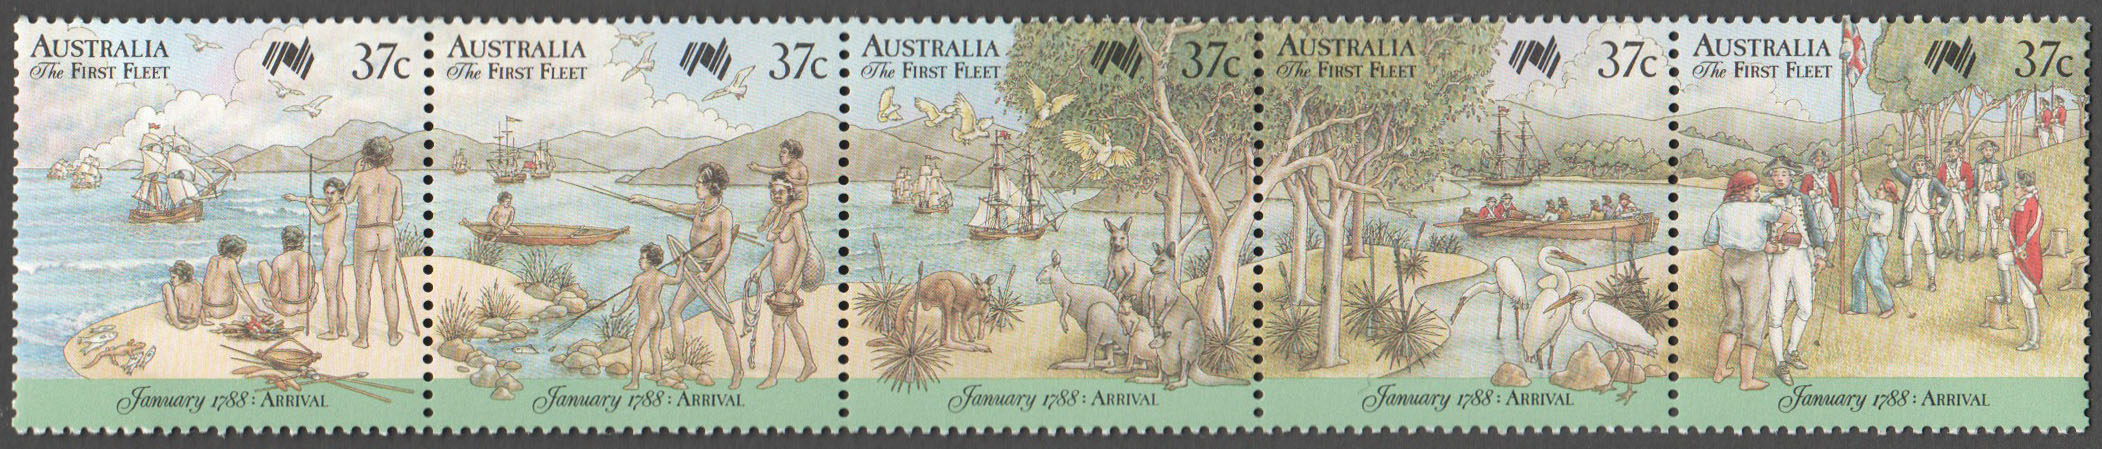 Australia Scott 1030 MNH (A2-12)